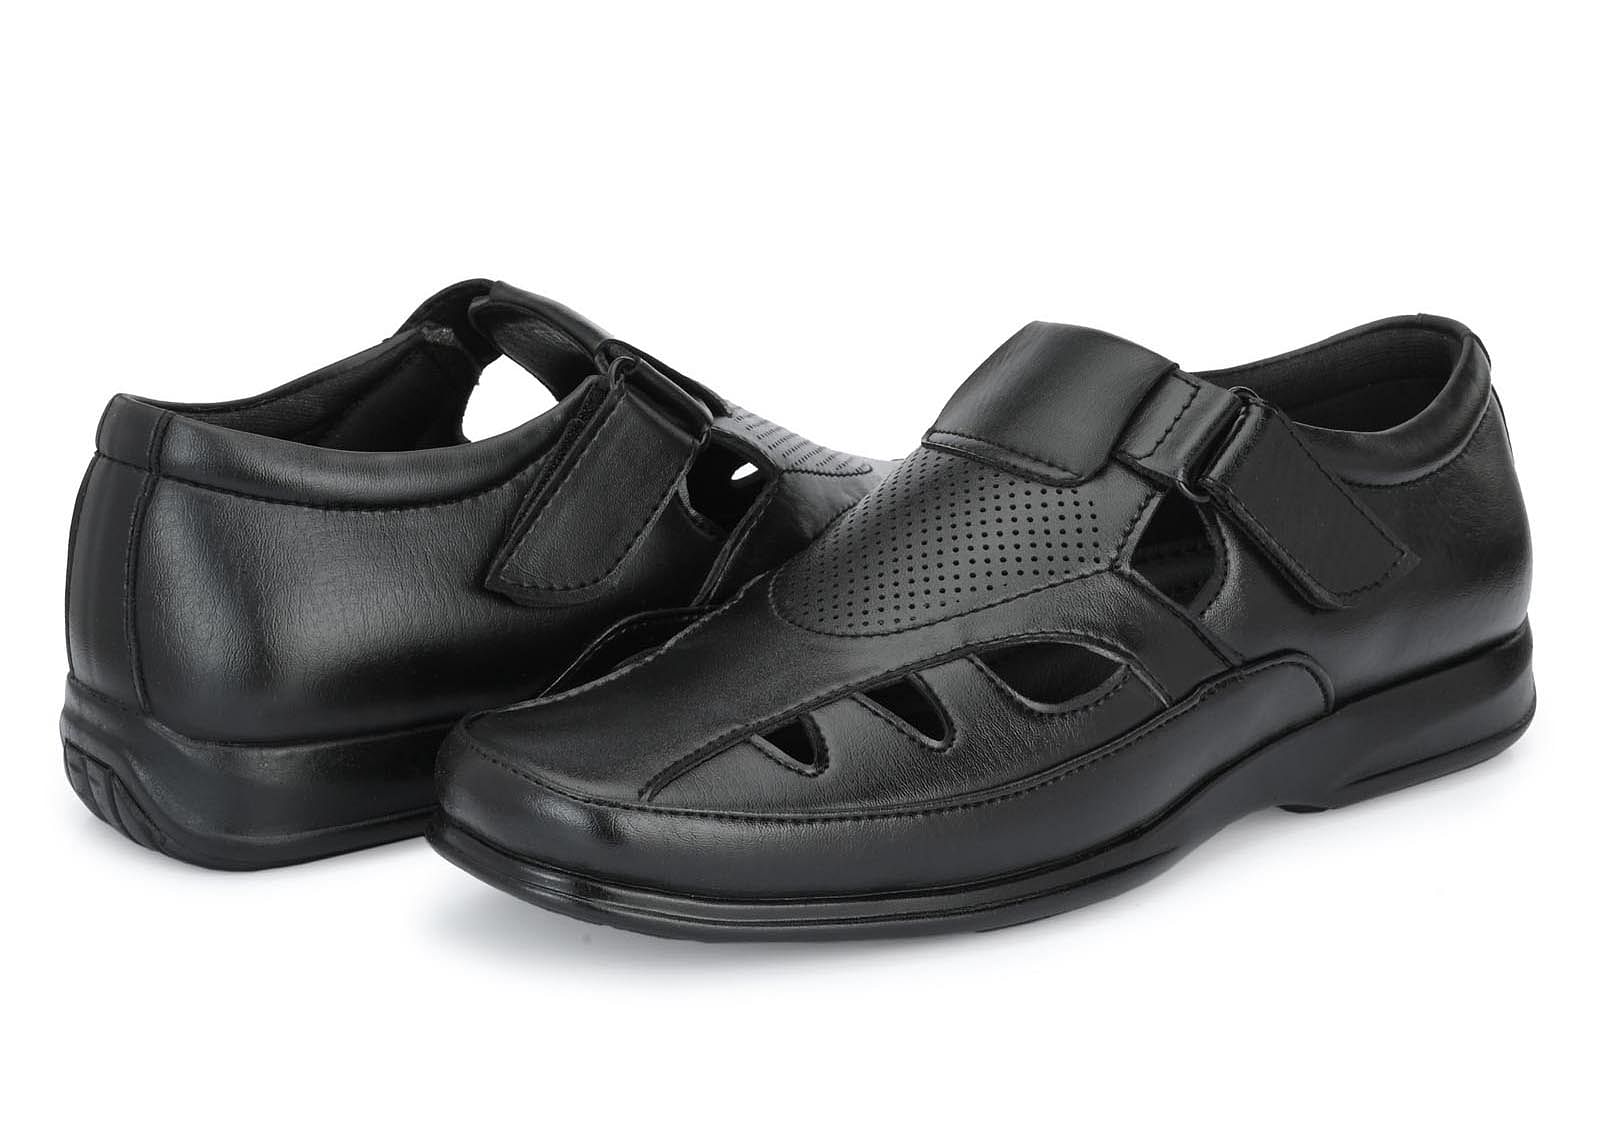 Pair-it Mn Sandals - Black-LZ-Roman-101